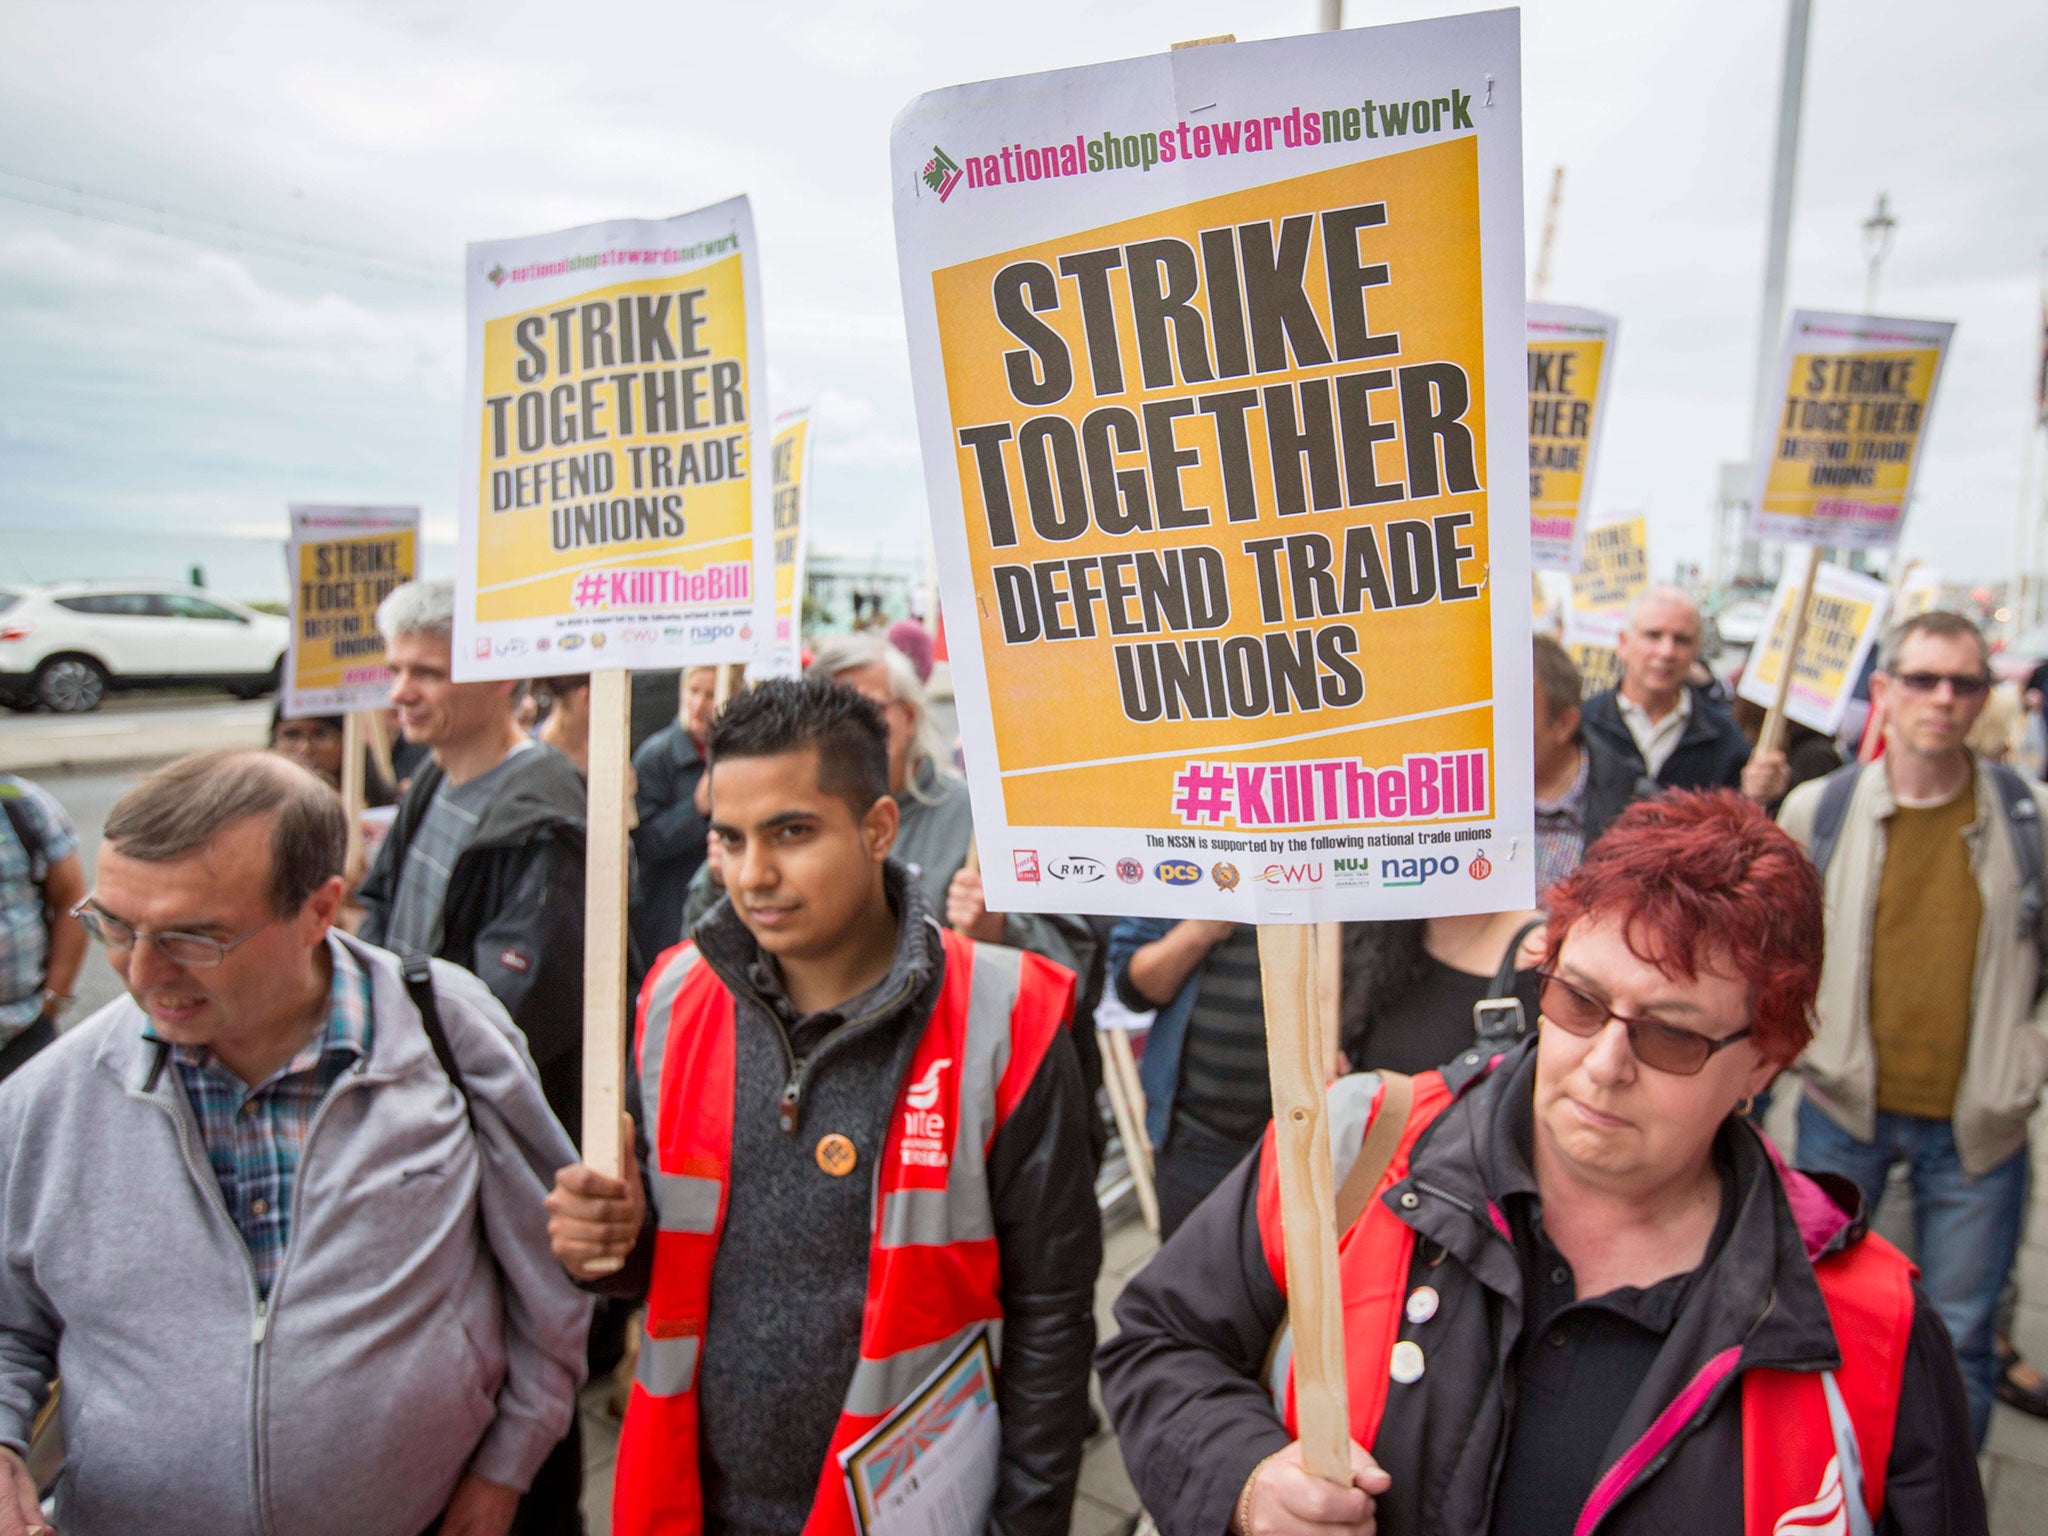 Union members outside the Brighton Centre